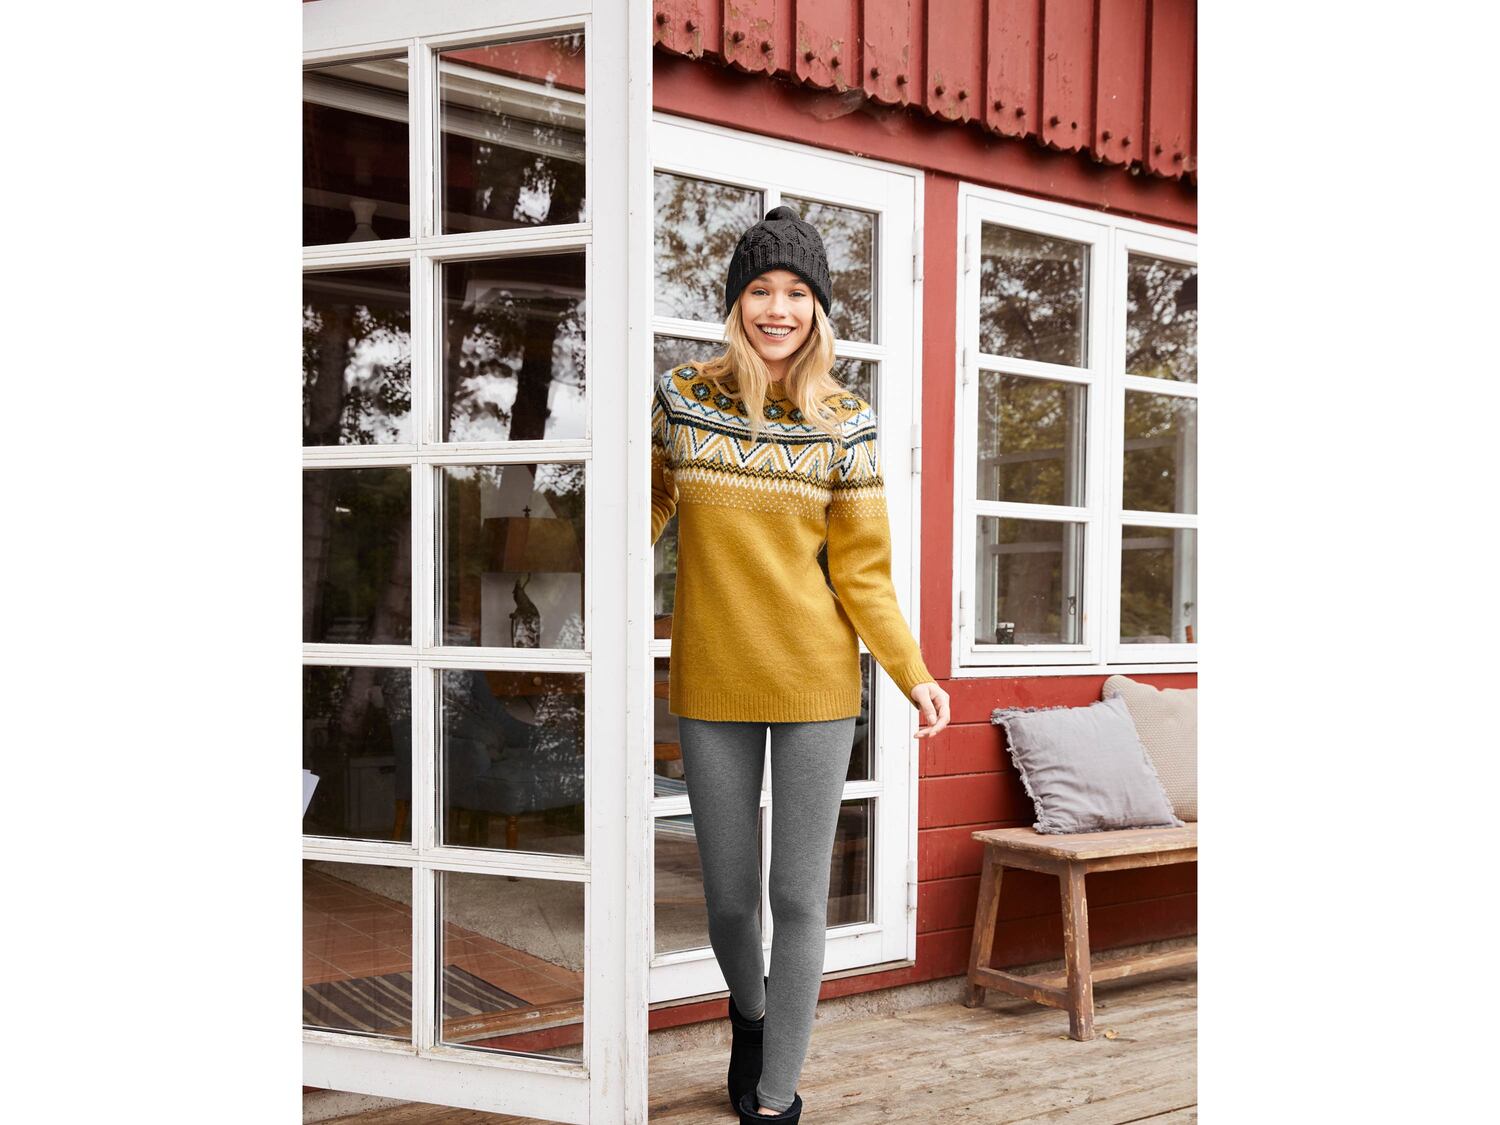 Sweter damski Esmara, cena 39,99 PLN 
- rozmiary: S-L
- wz&oacute;r żakardowy ...